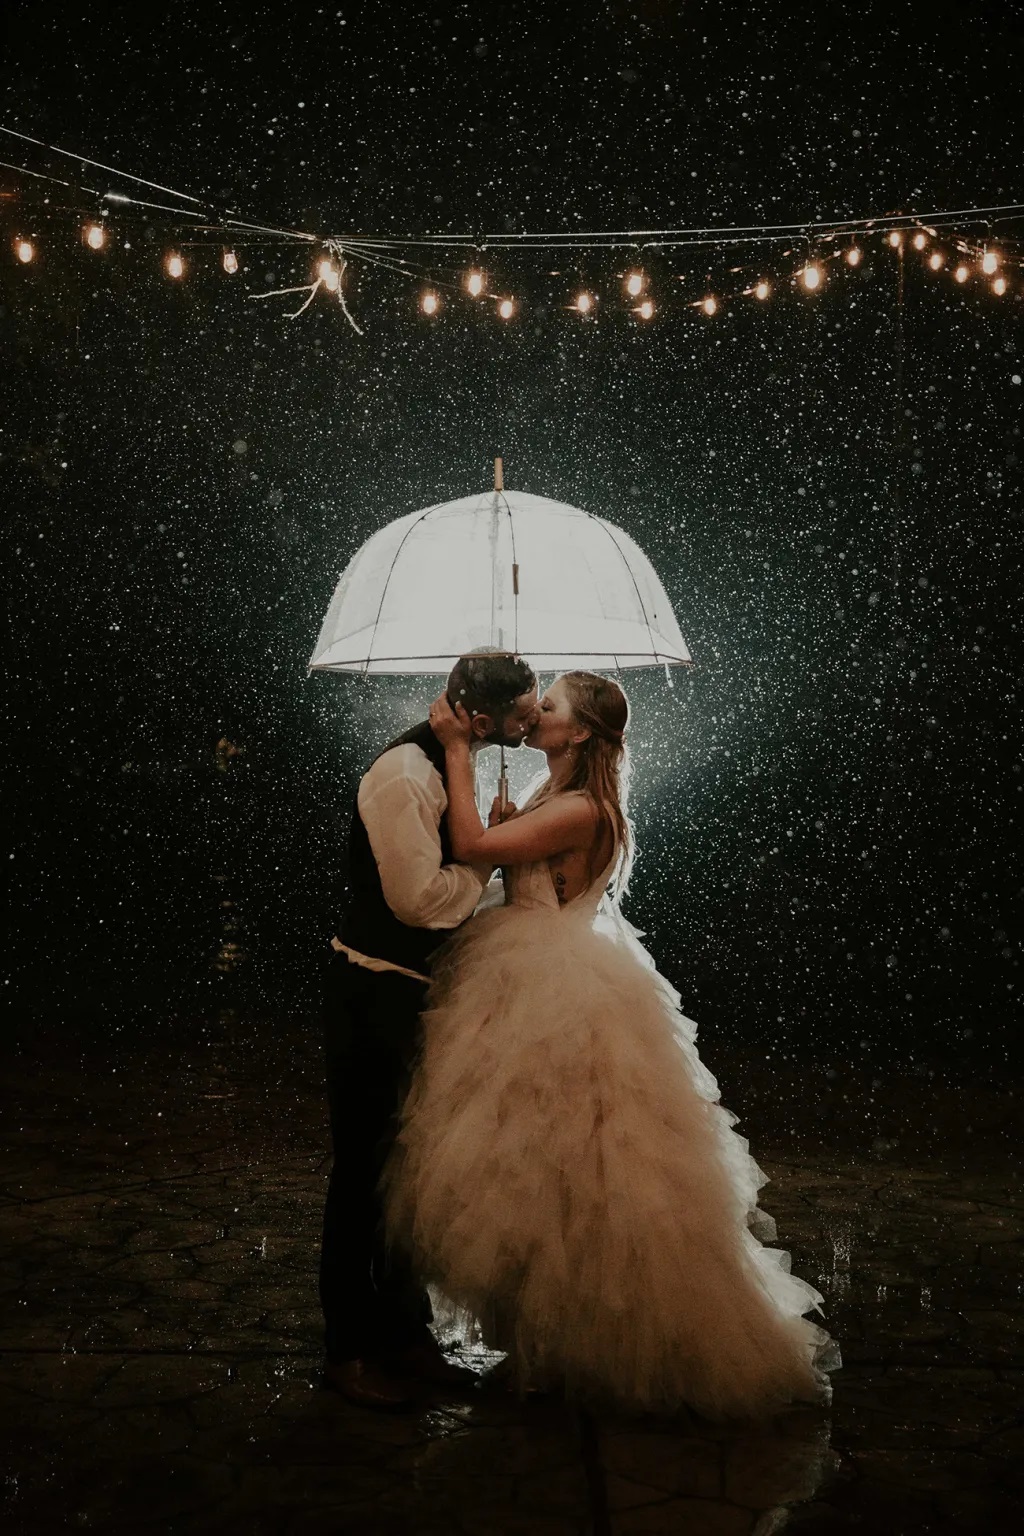 foto de casamento na chuva de noite